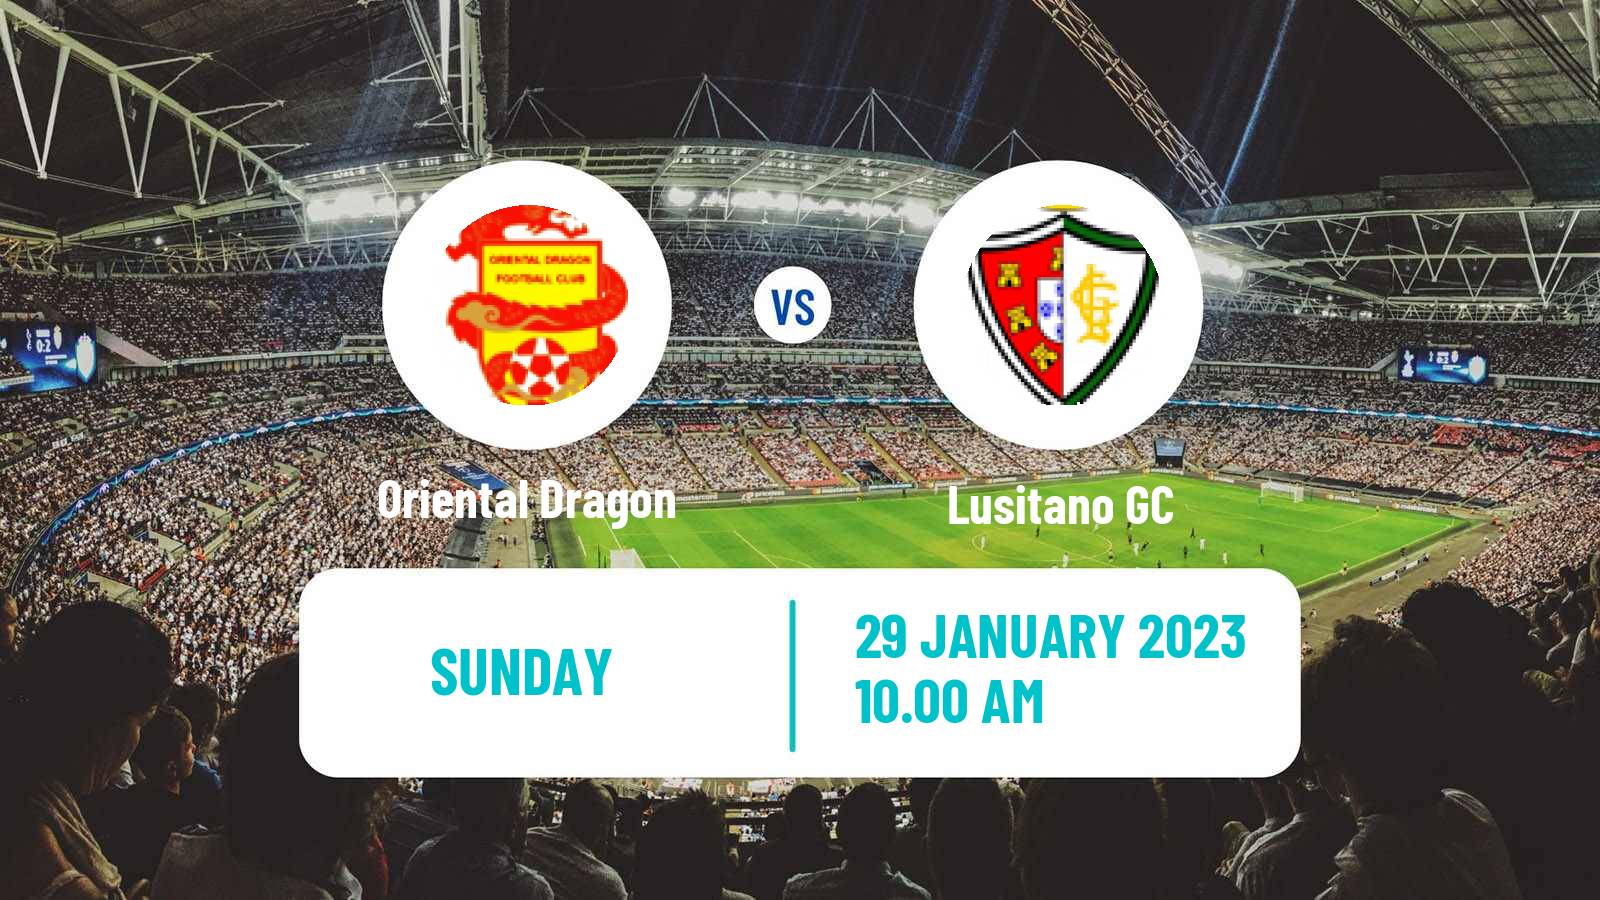 Soccer Campeonato de Portugal Oriental Dragon - Lusitano GC